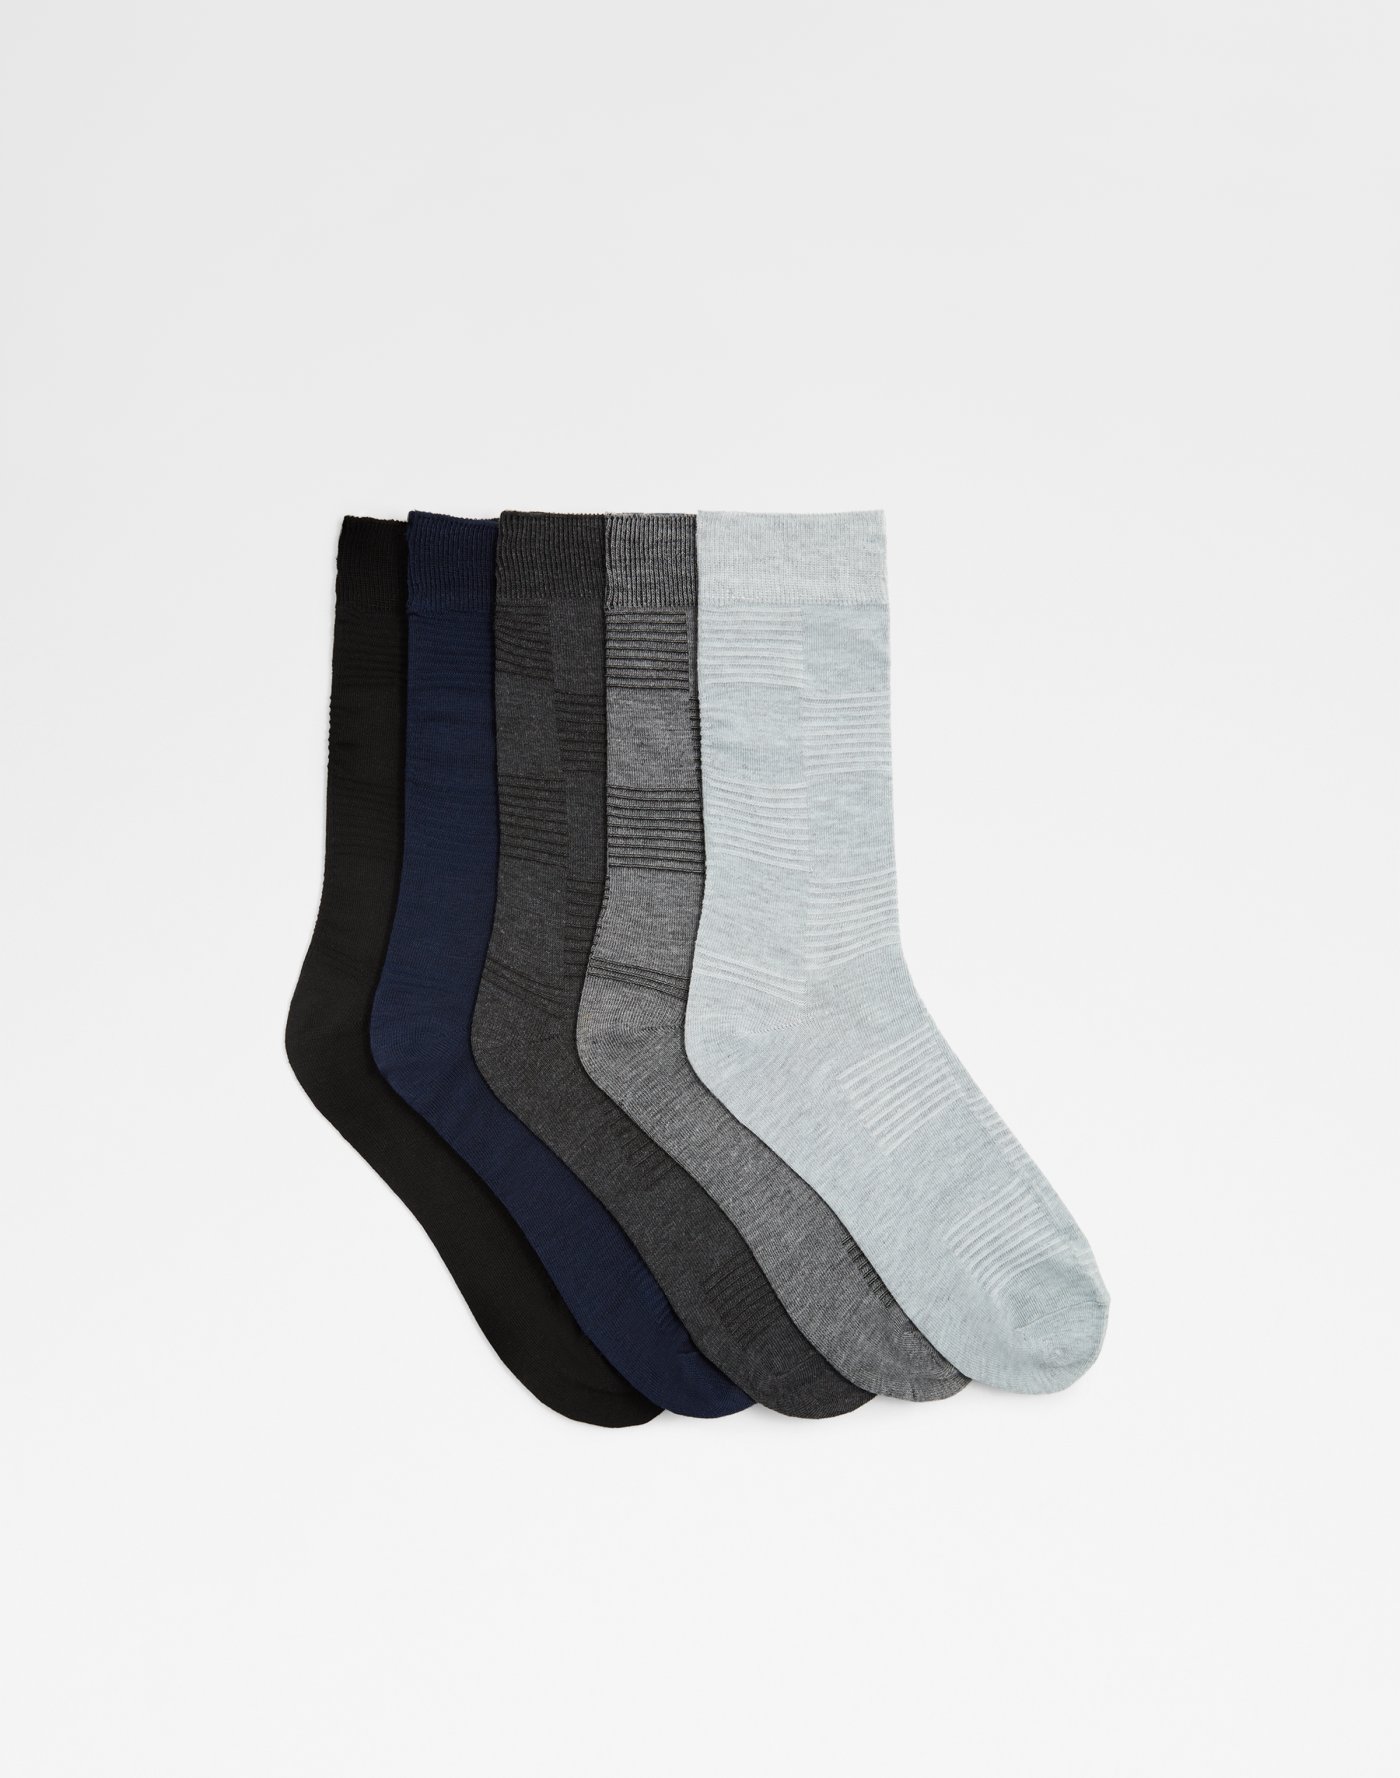 aldo mens socks